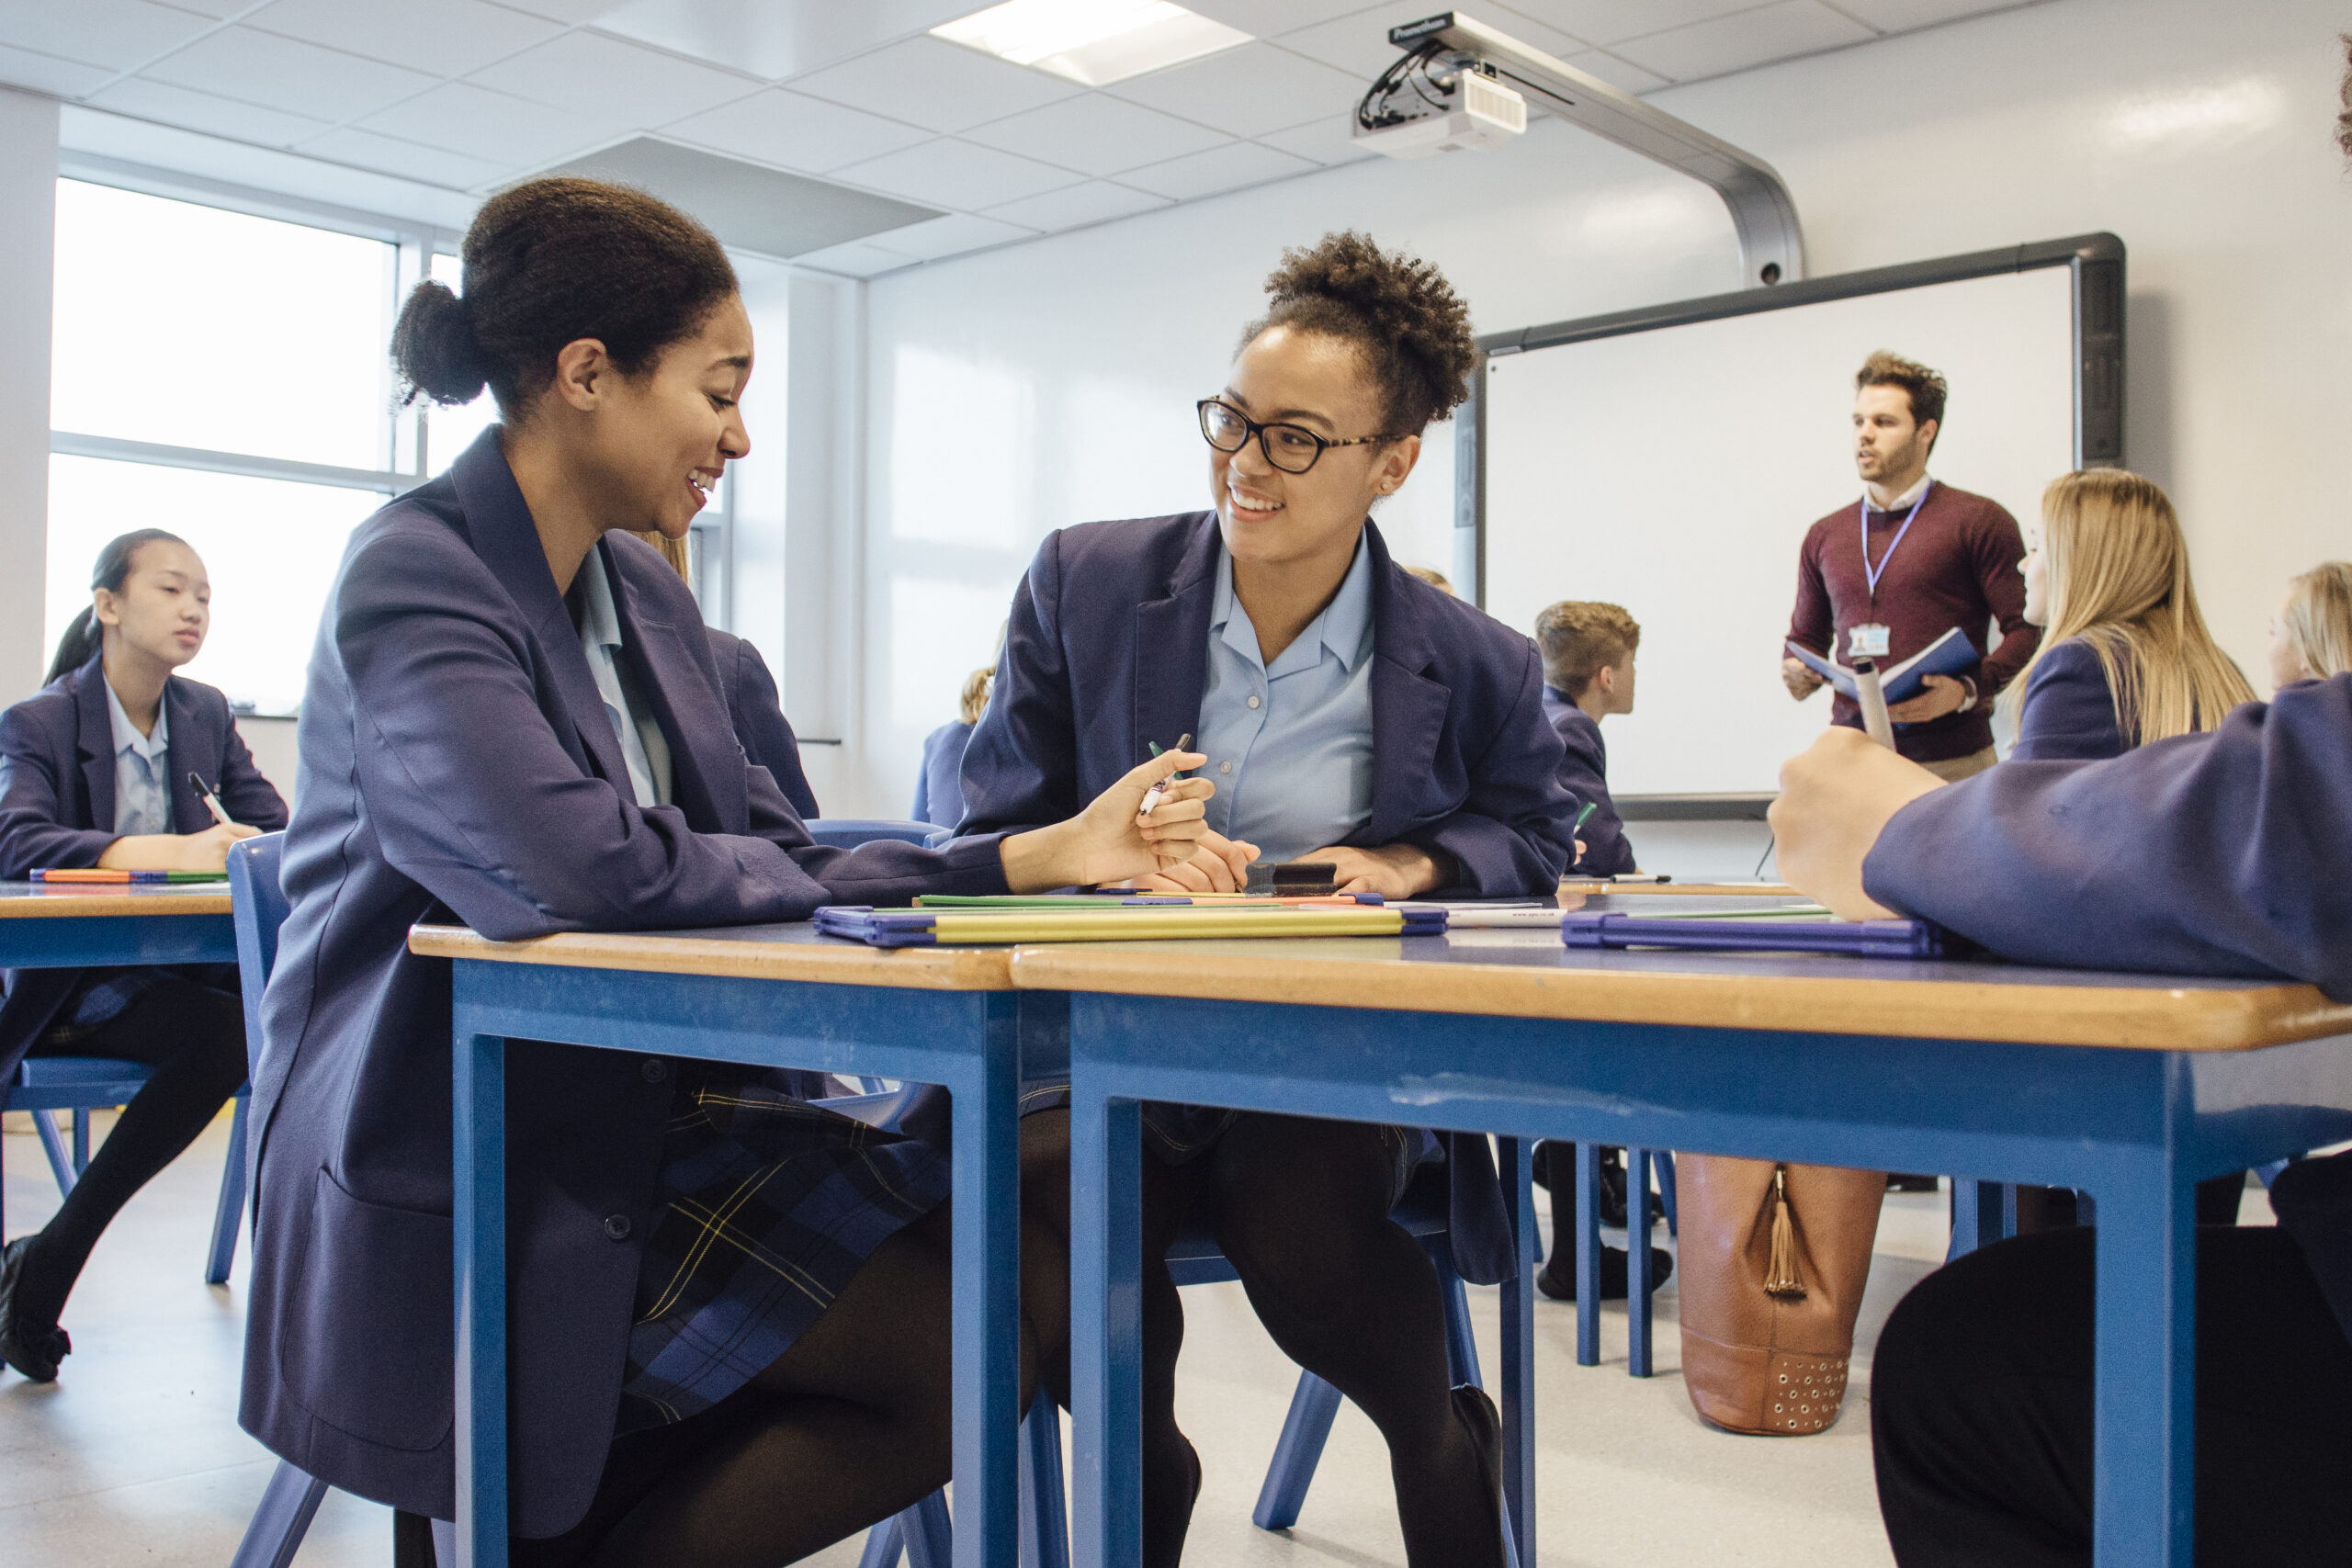 Two teenage girls in school uniforms in a classroom talking